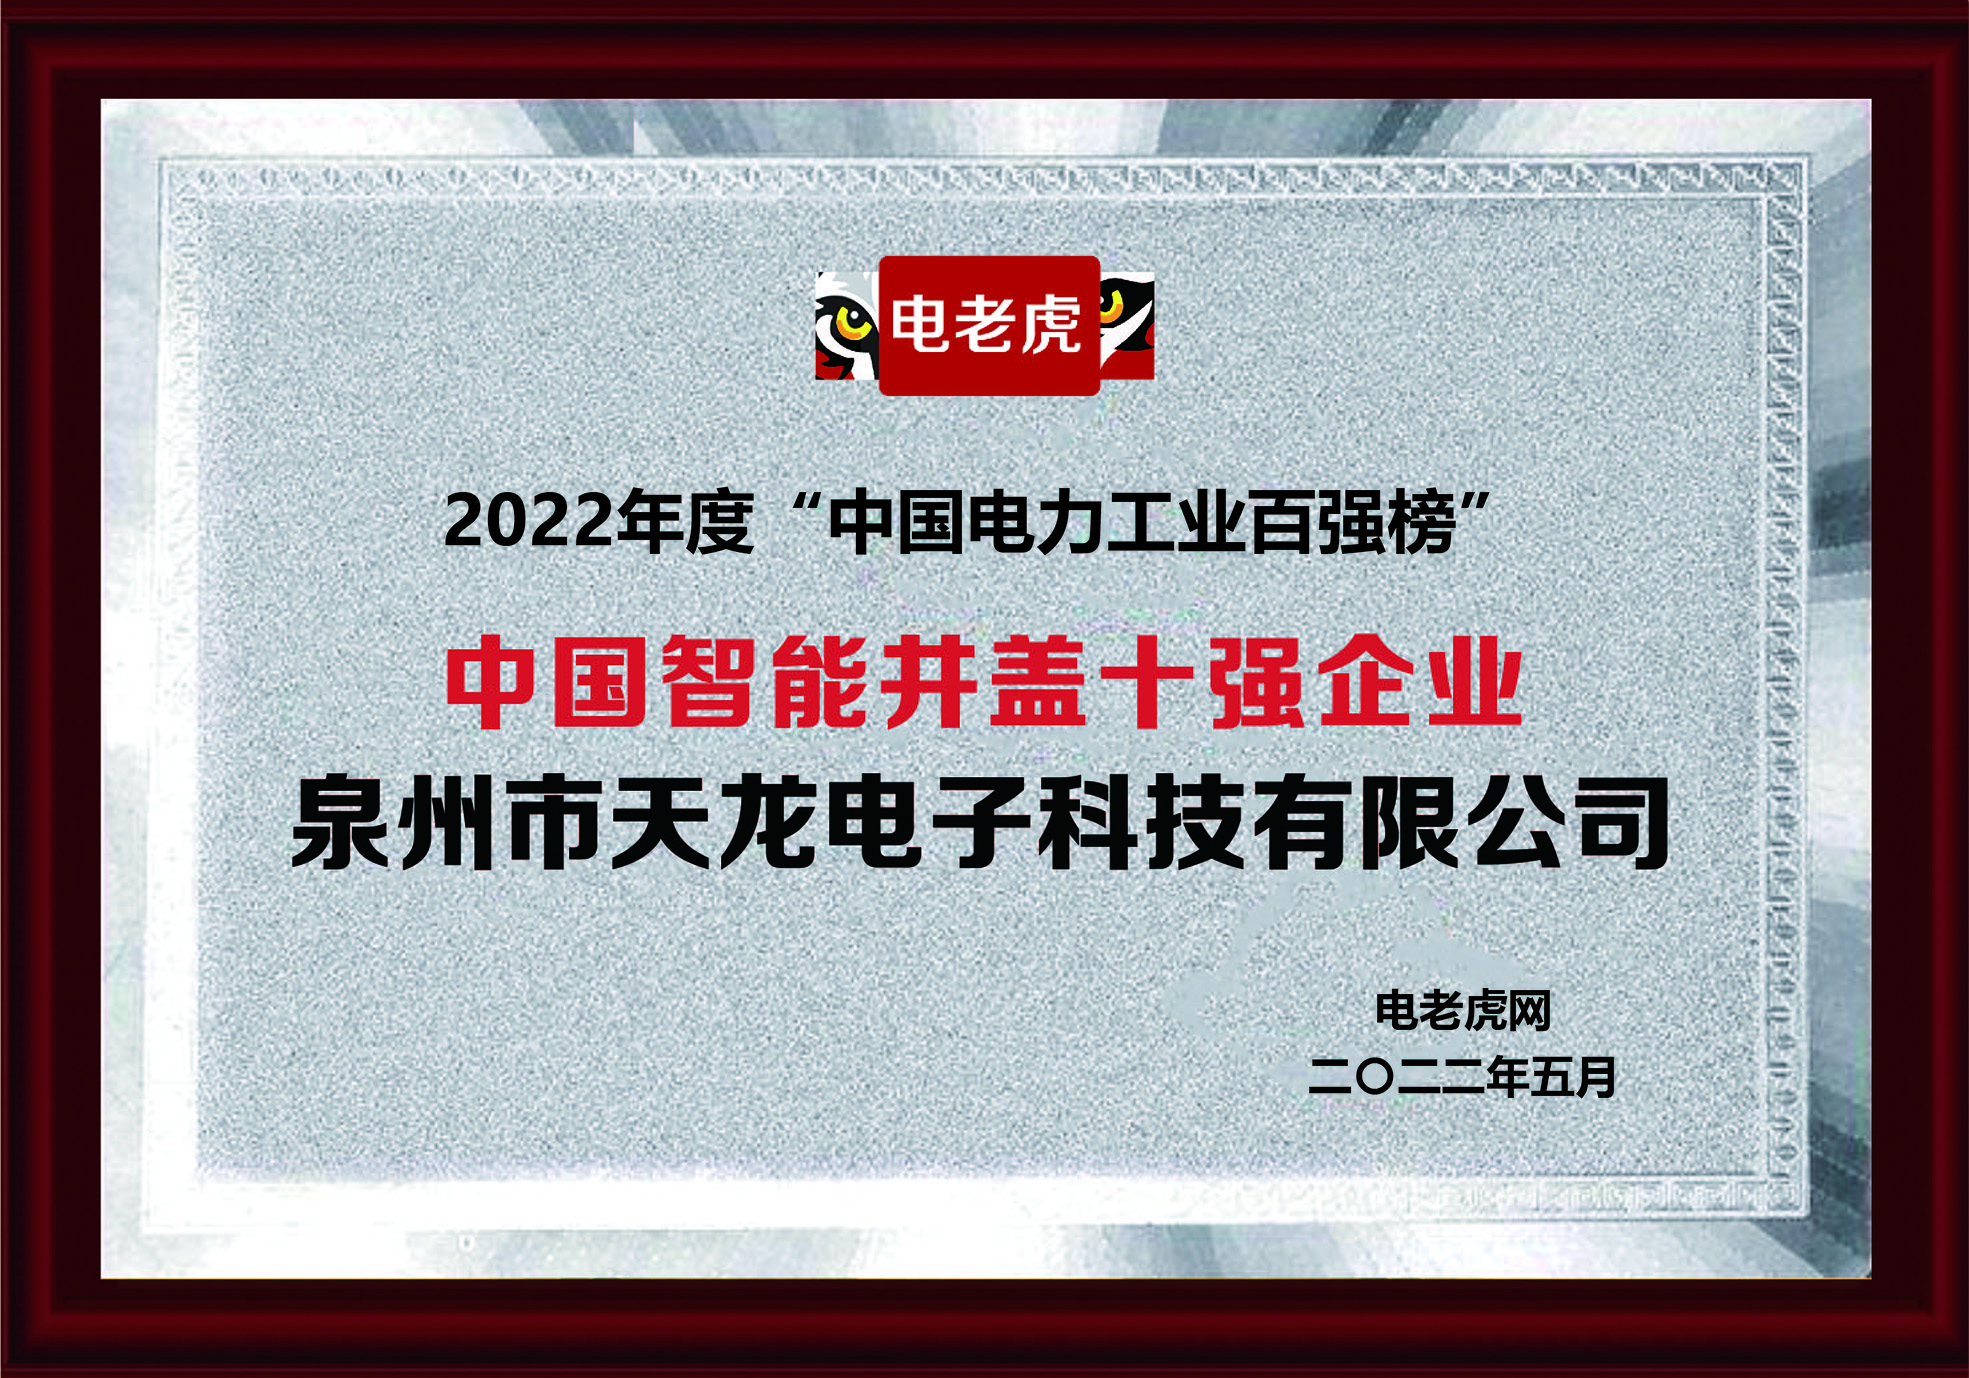 热烈祝贺771771威尼斯.cm特色被评为中国十大智能井盖品牌